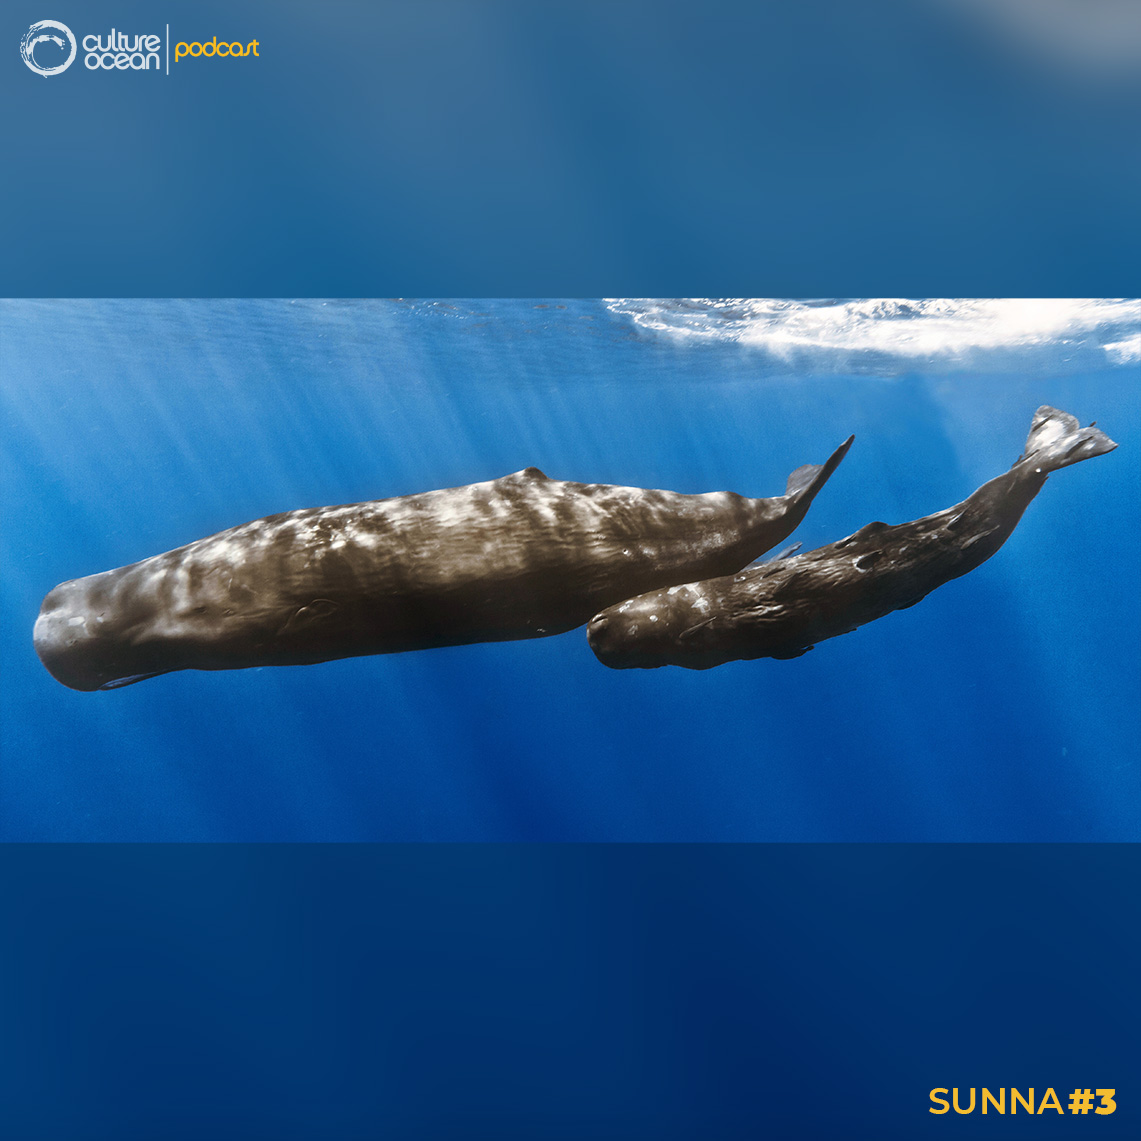 Sunna #3 - Un cachalot femelle et son petit. Ce mammifère marin peut plonger en apnée 90 min jusqu’à plus de 2000 m ! Crédits : Sperm whale mother with calf - Gabriel Barathieu / Réunion Underwater Photography - source : Flickr - Licence CC BY-SA 2.0.